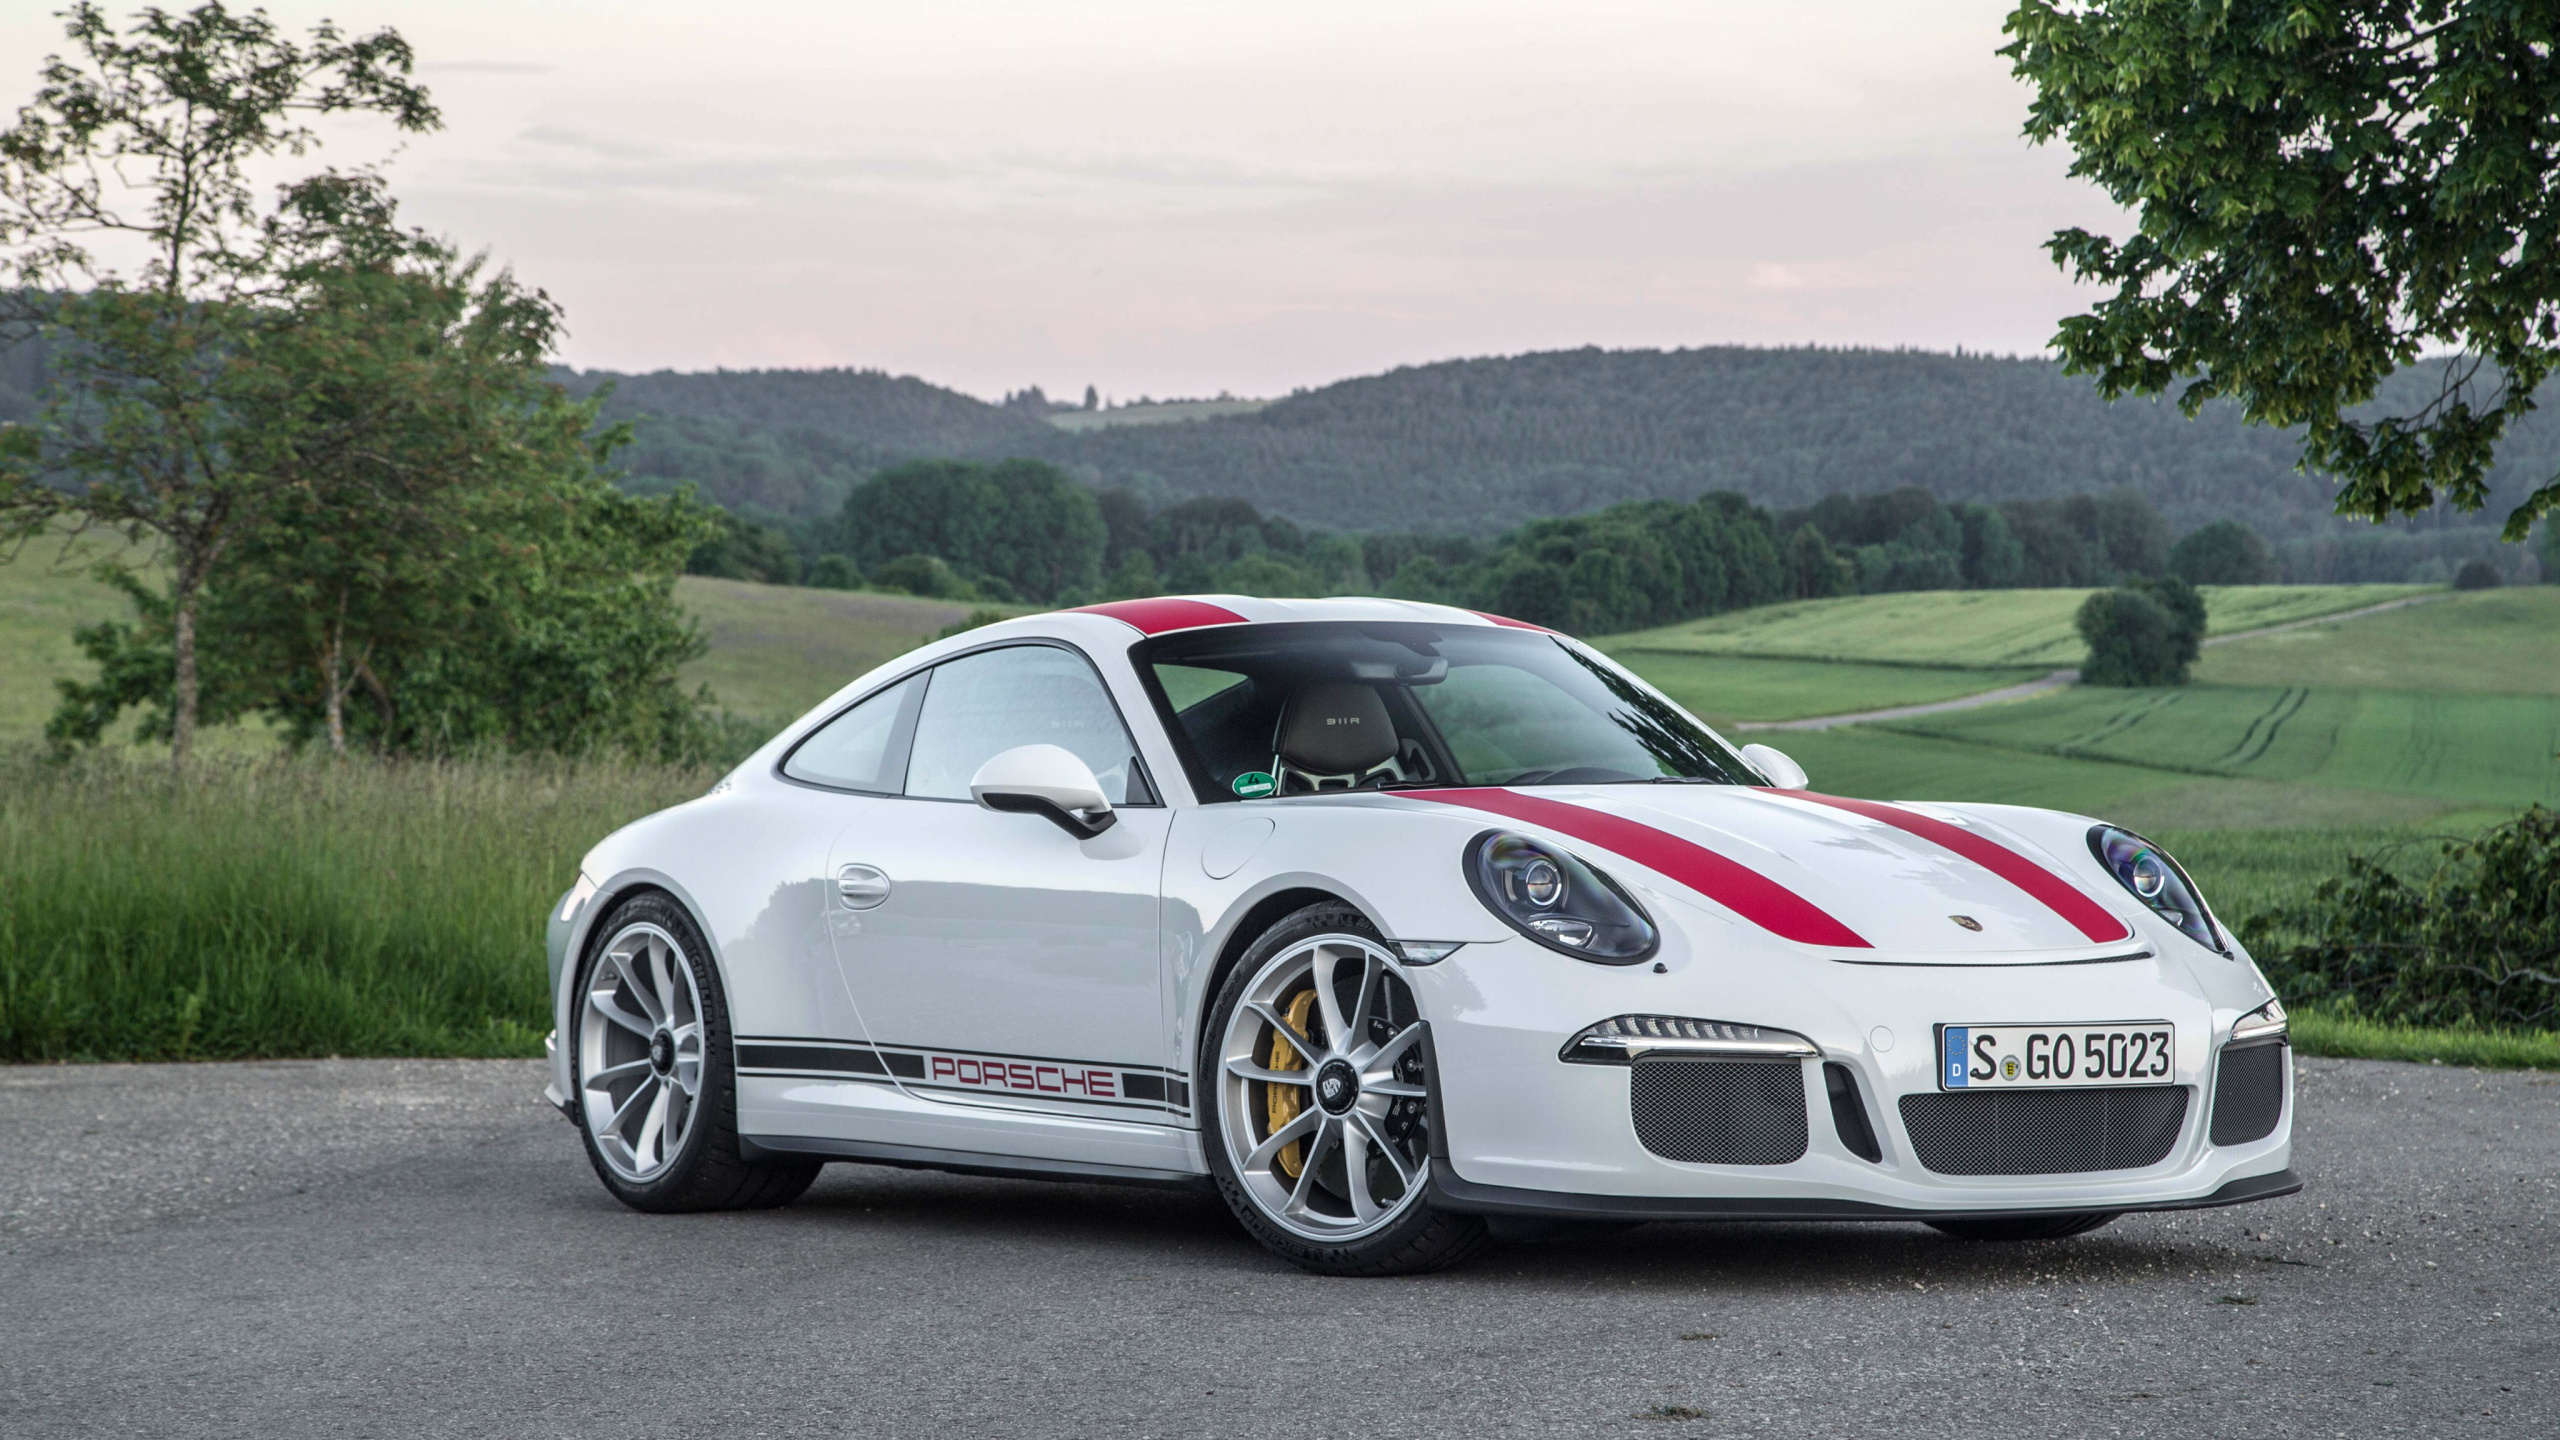 Weißer Porsche 911 Tagsüber Unterwegs. Wallpaper in 2560x1440 Resolution